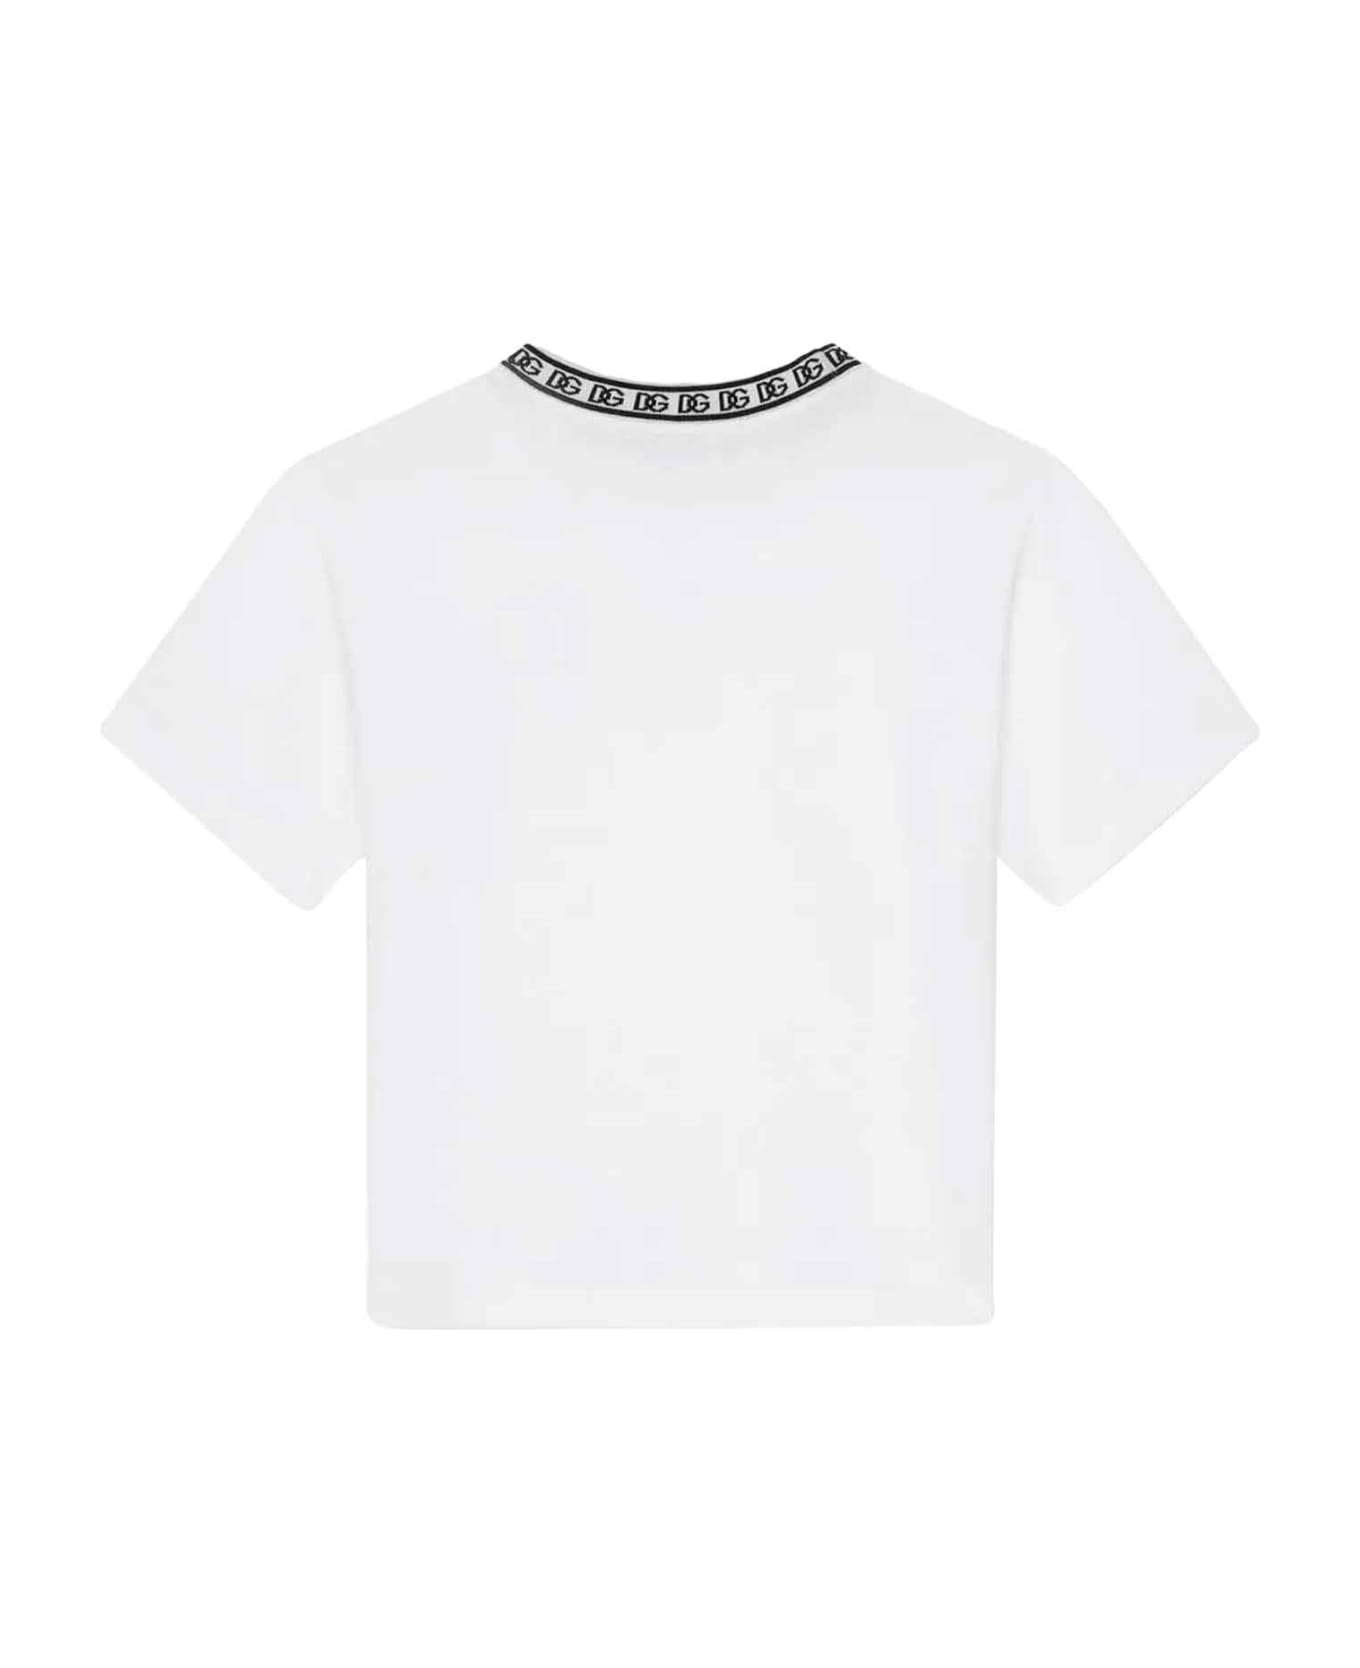 Dolce & Gabbana White T-shirt Boy - Bianco